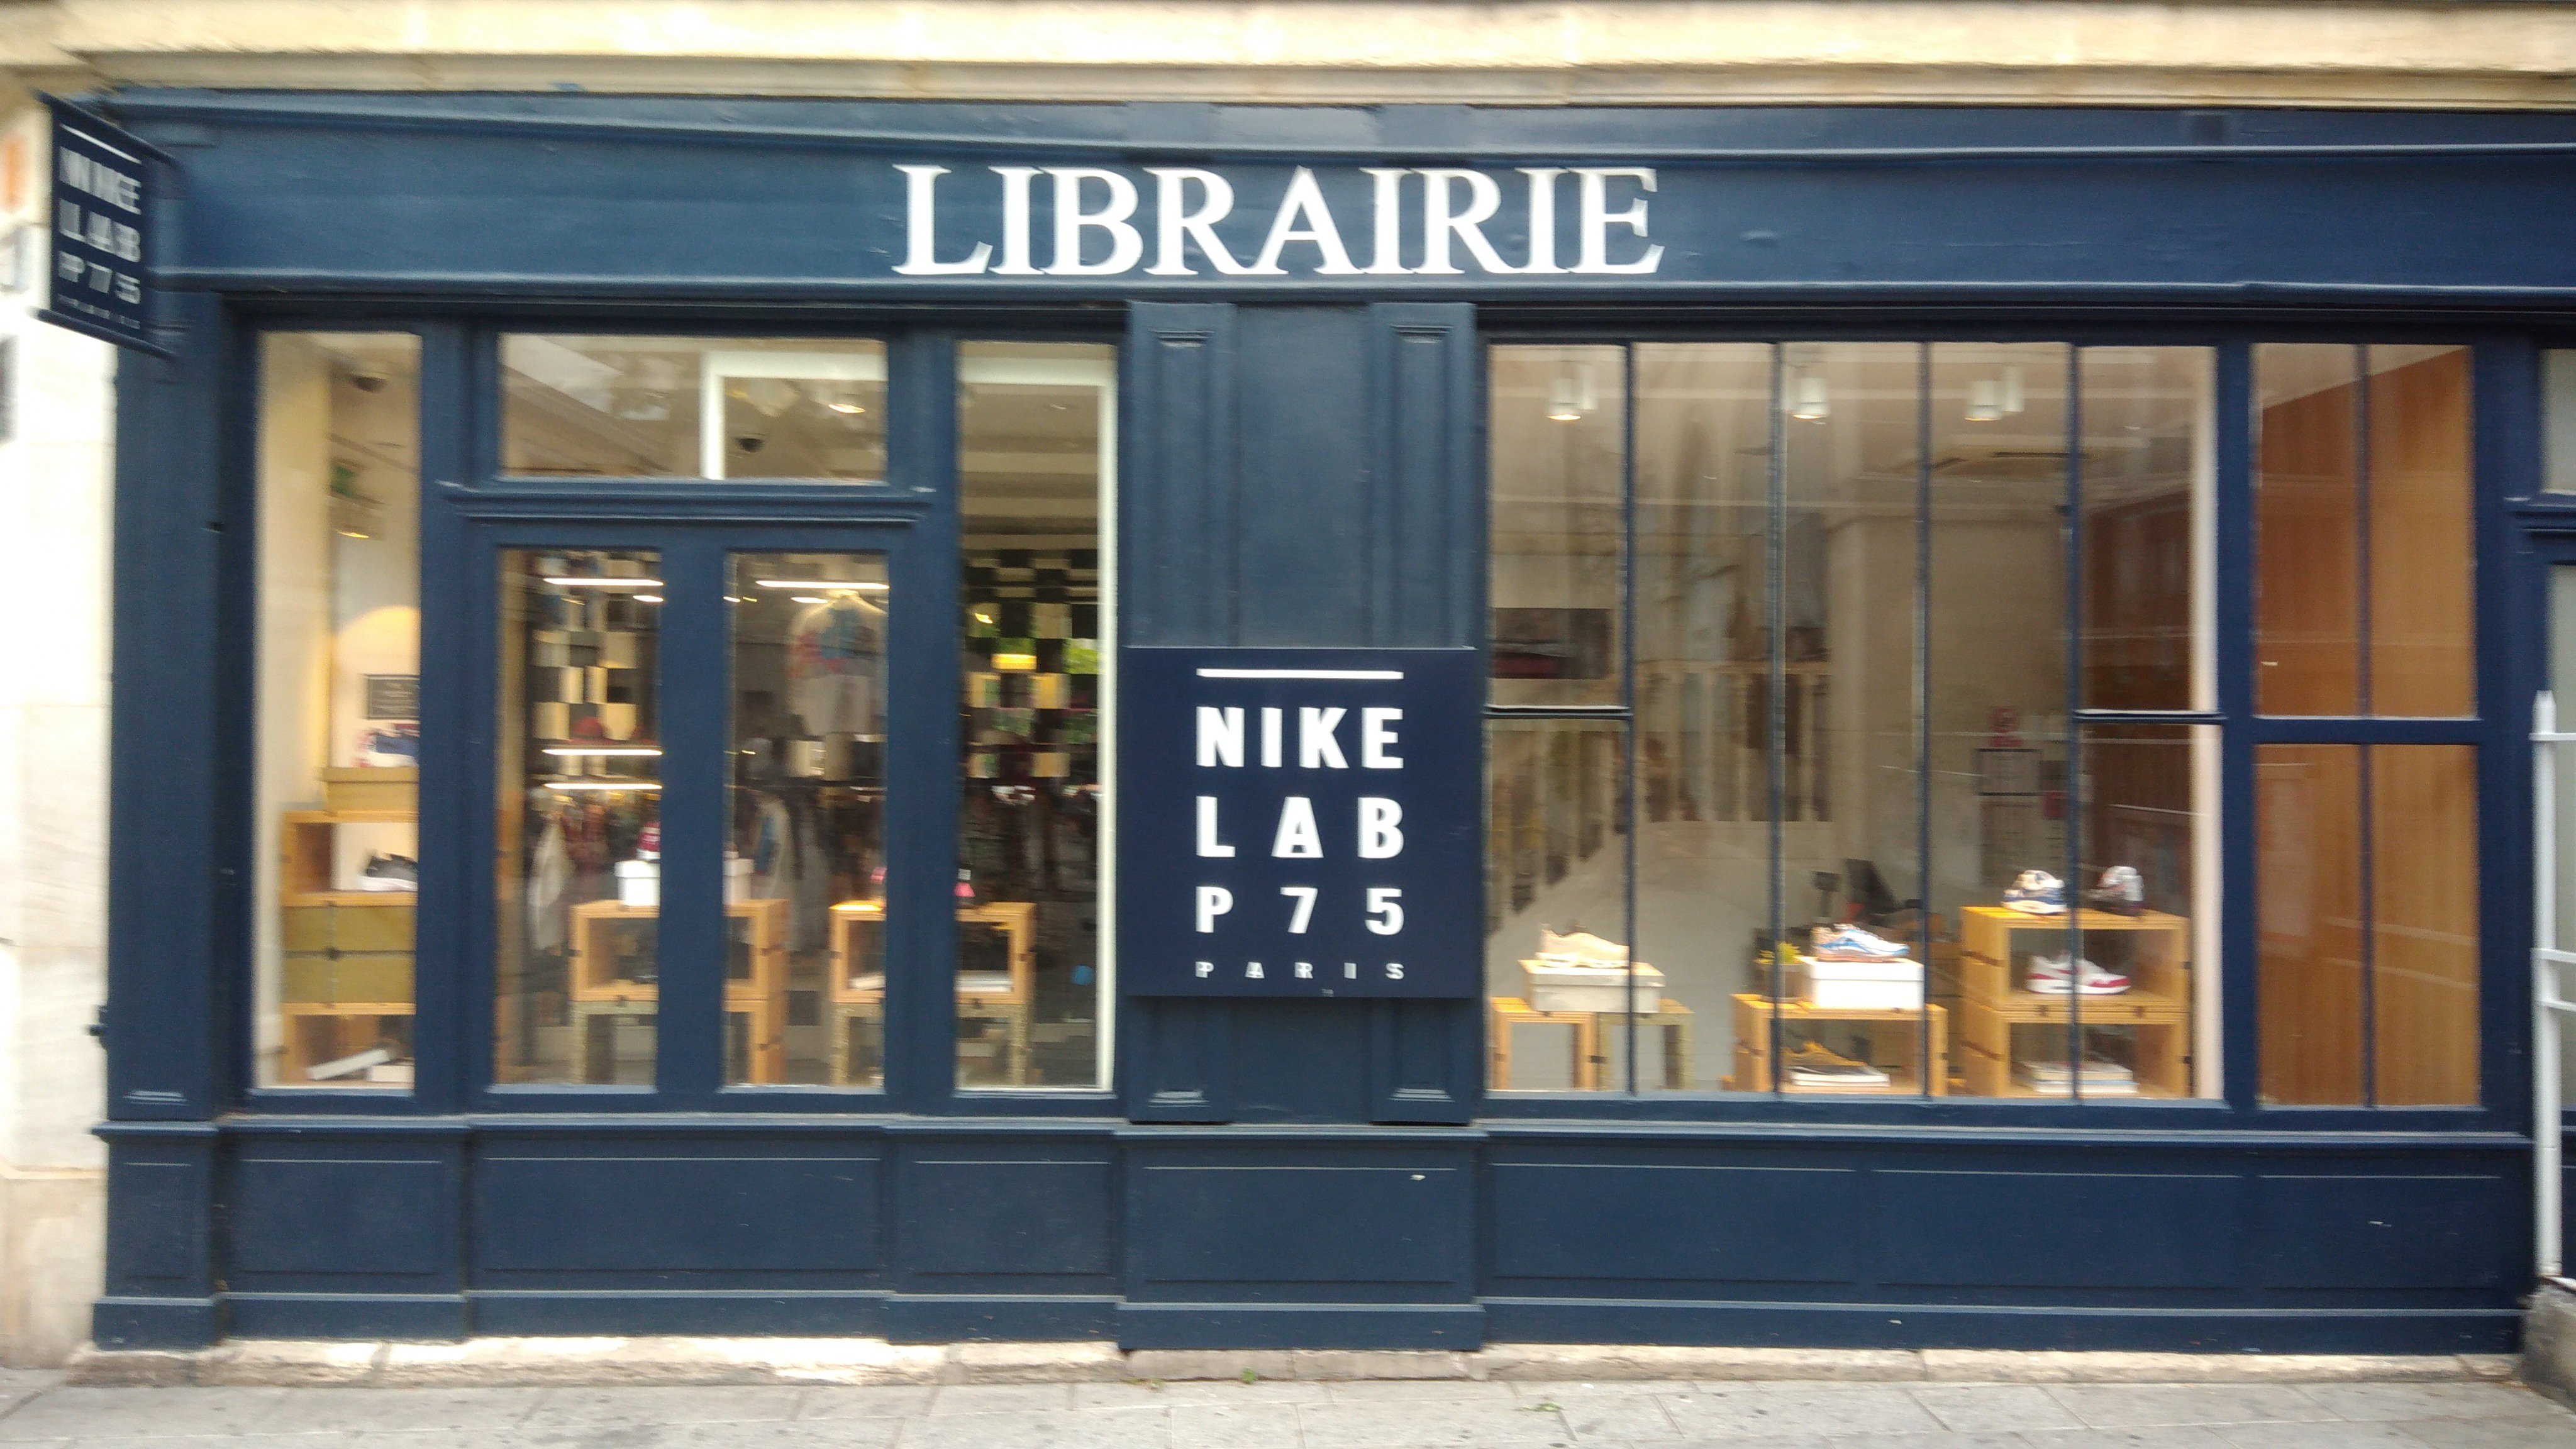 Matthieu no Twitter: "Cool capitalism: A Paris, le Nike Lab P75 conserve l'enseigne de l'ancienne librairie. Il est probable que le marketeur adhère à l'idée la collection de Nike est